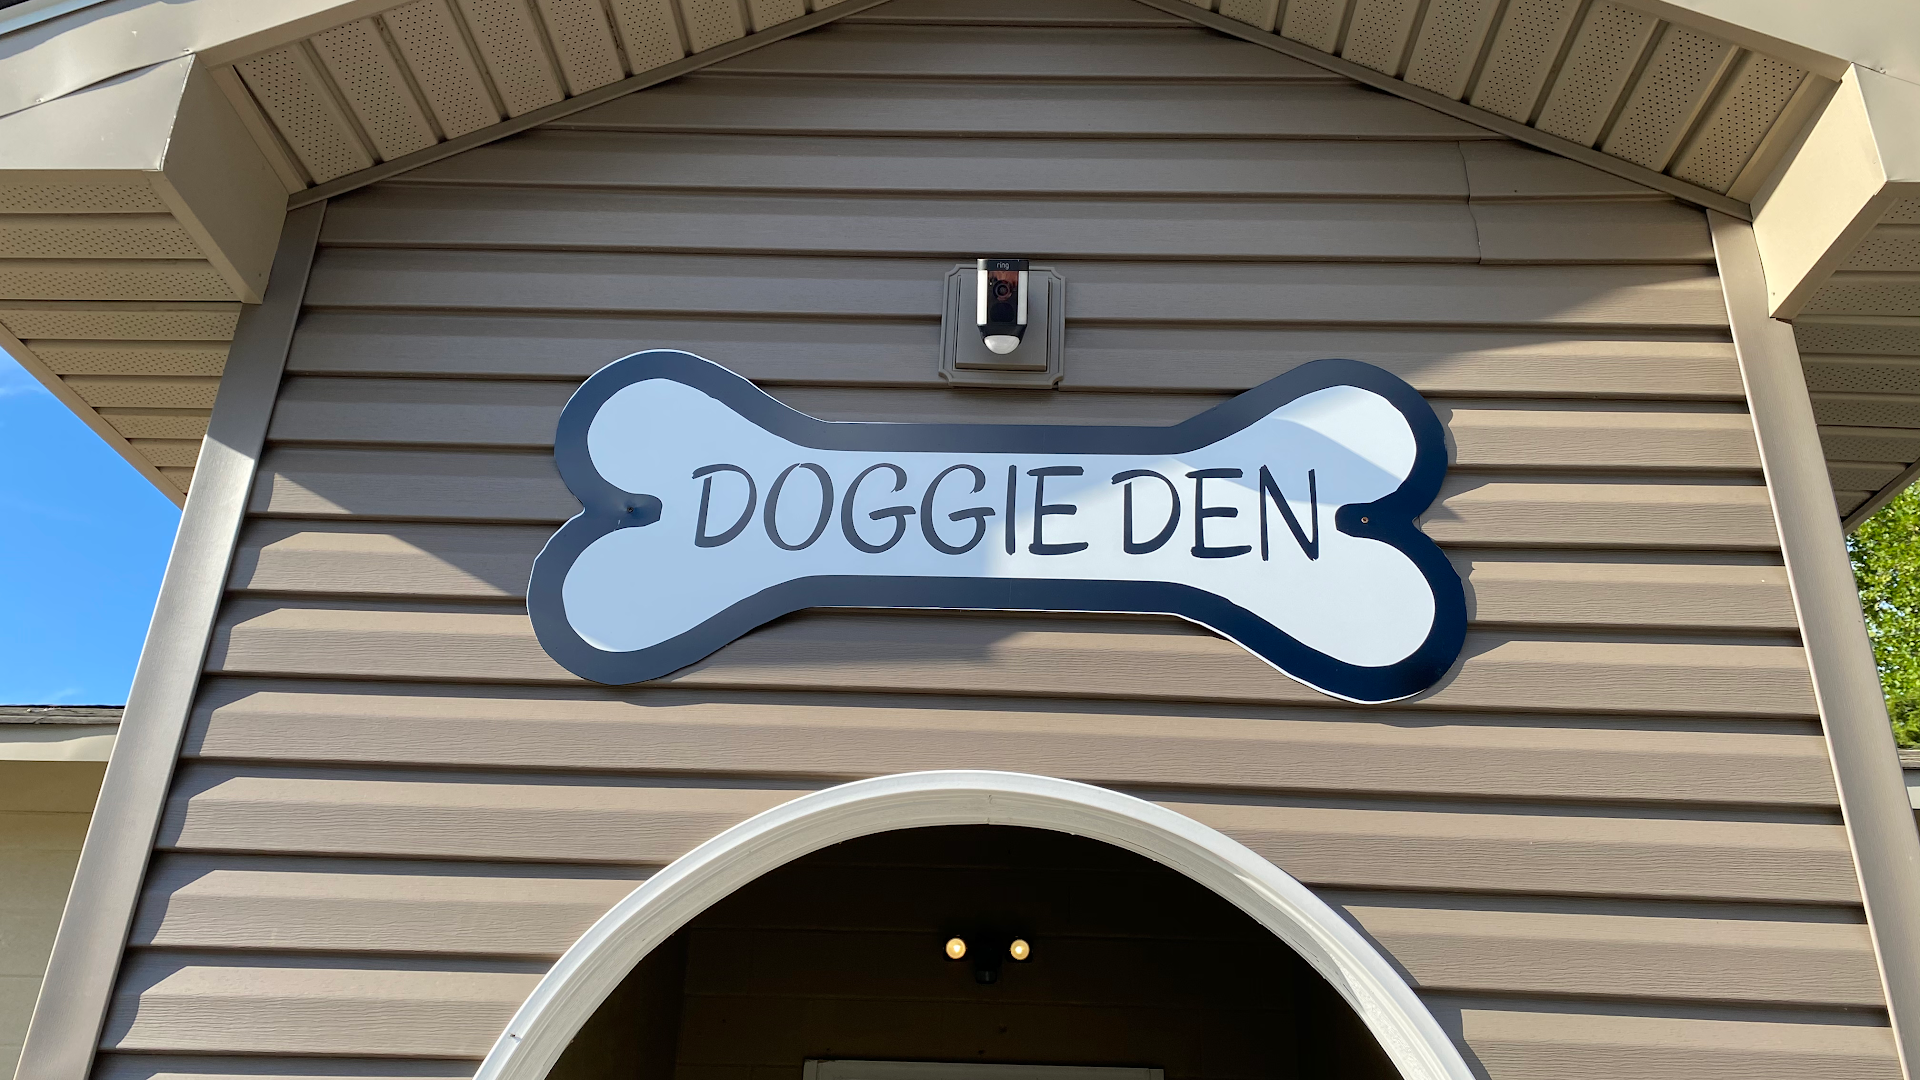 Doggie Den